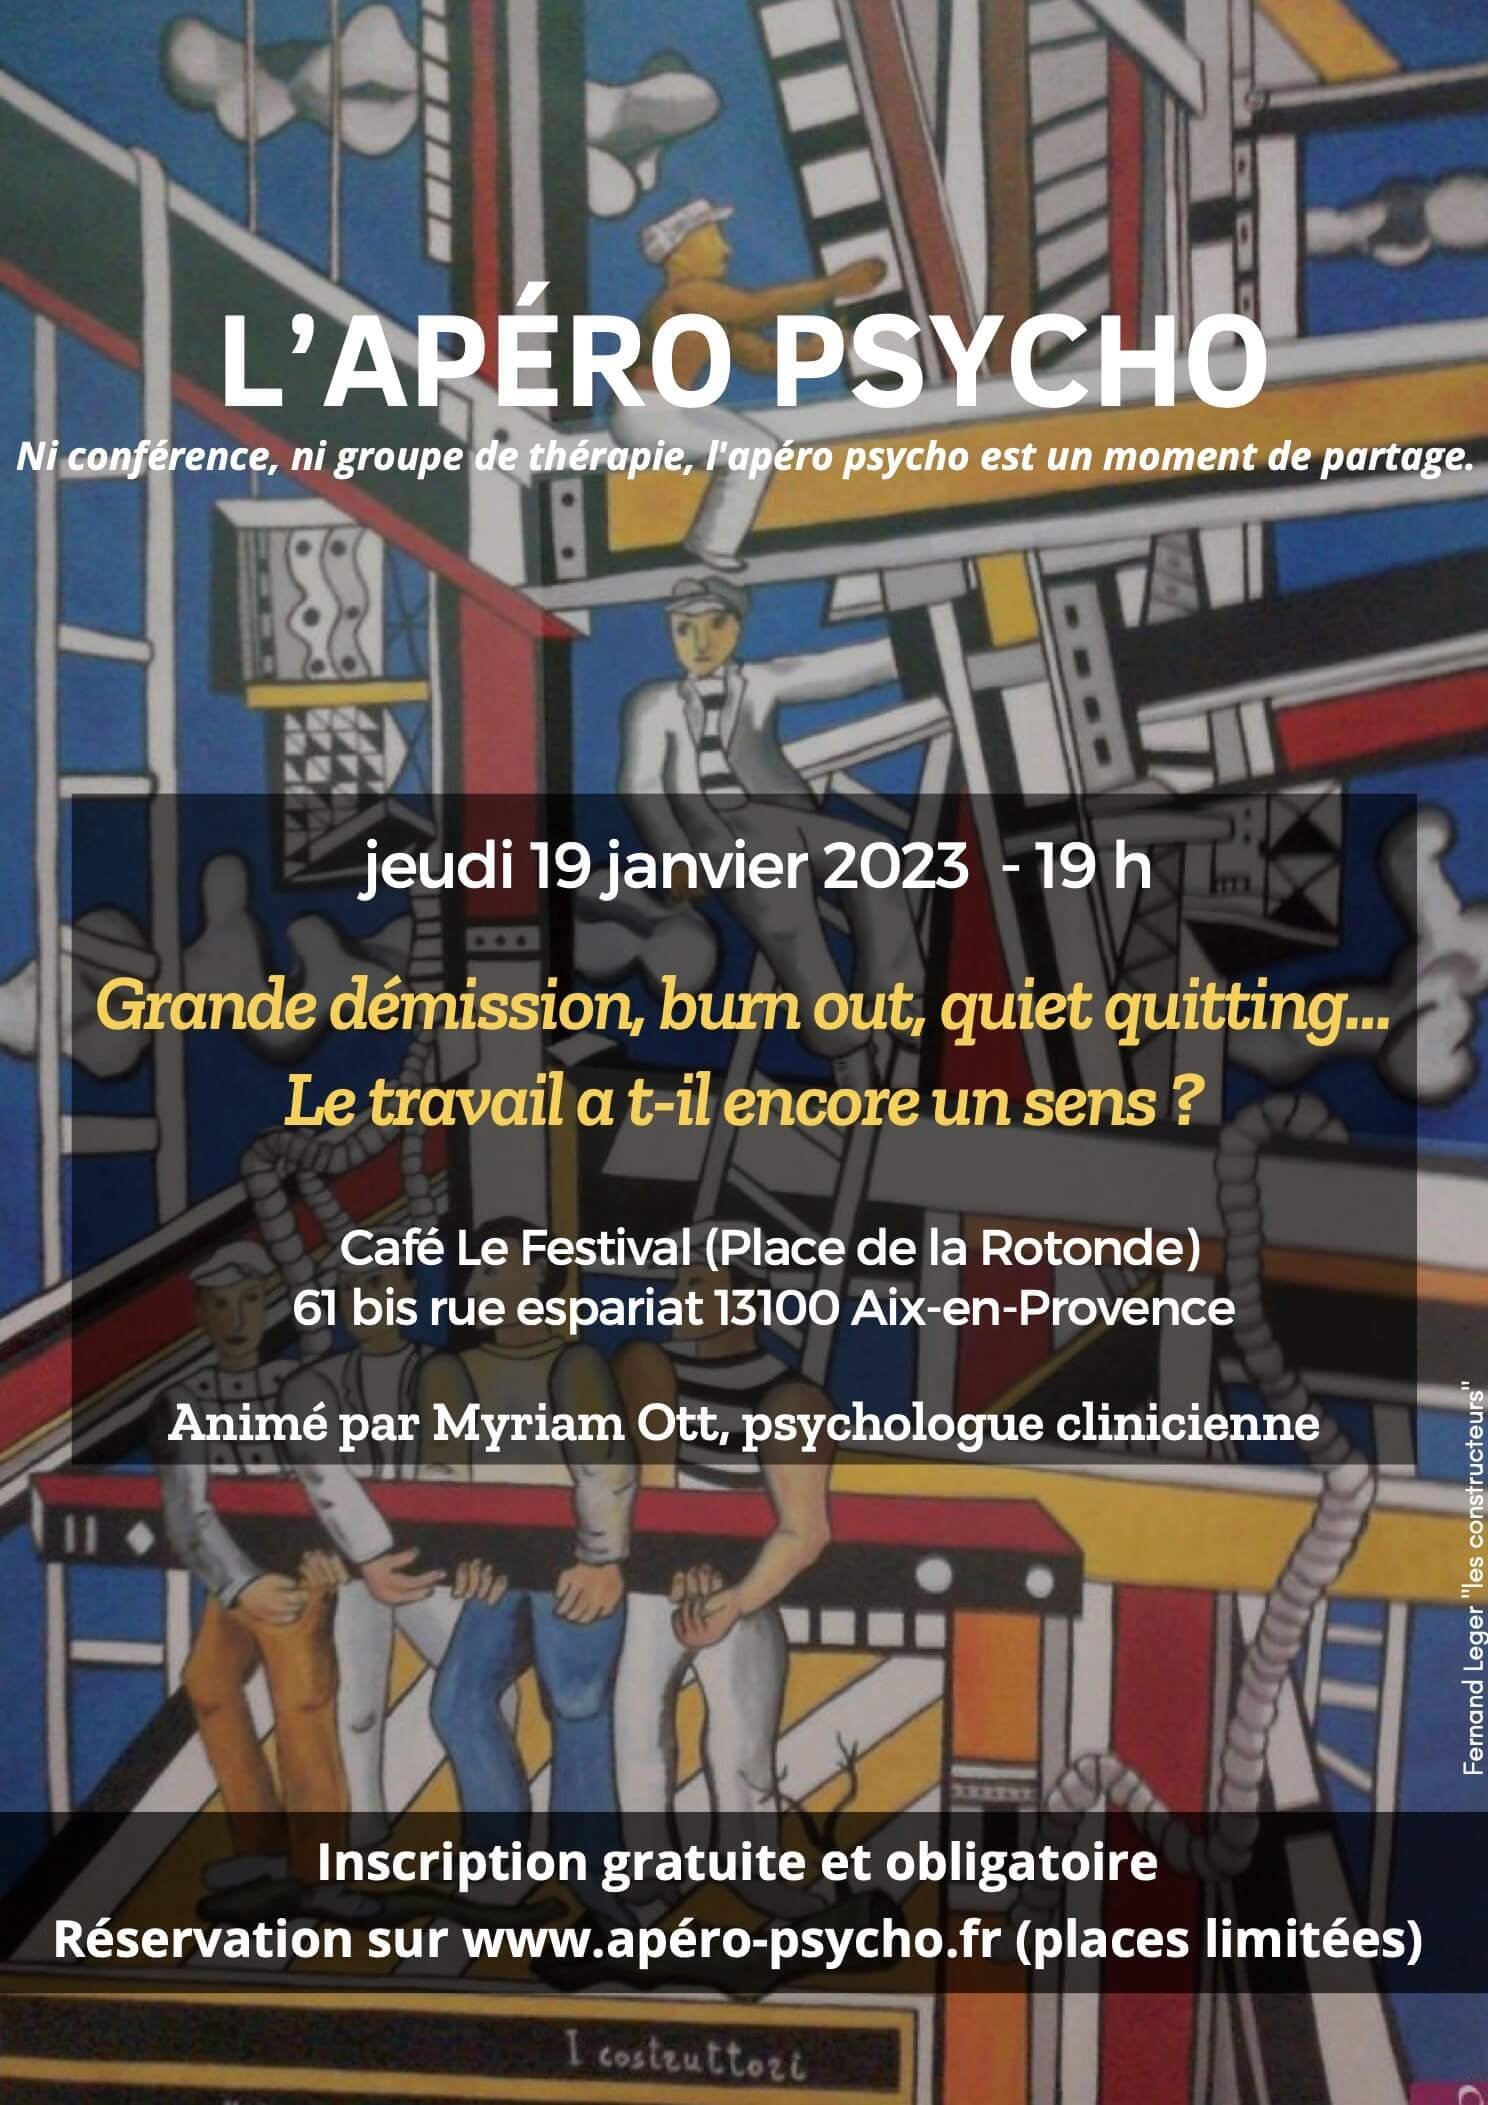 Apero Psycho 19 janvier 2023 - Eguilles - Aix-en-provence